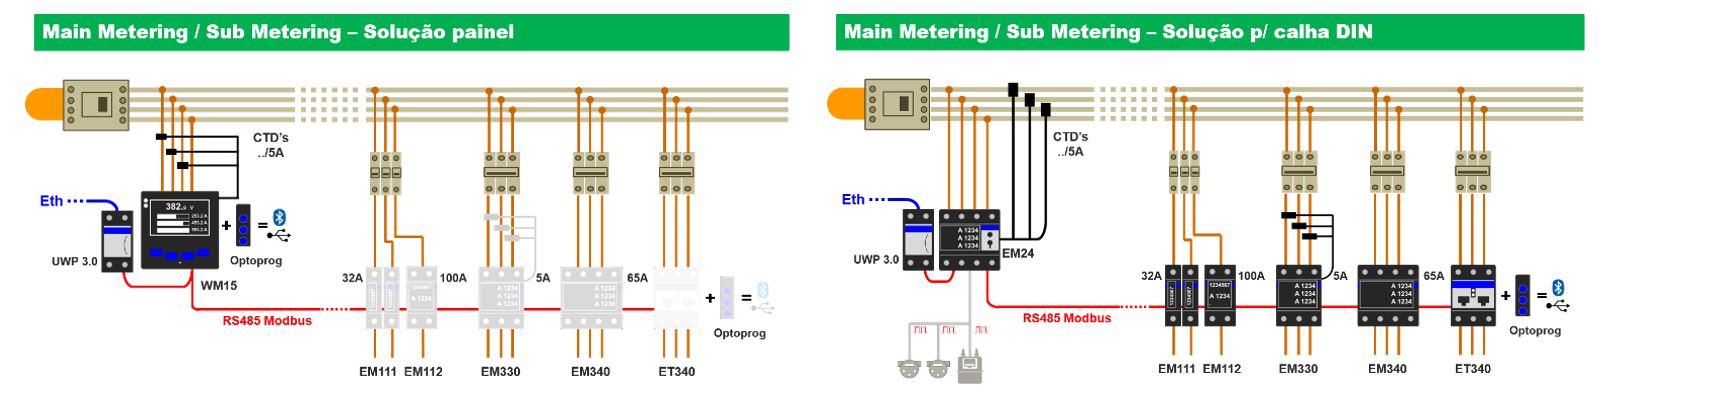 Main Metering/Sub Metering - Soluo paine ( esquerda); Main Metering/Sub Metering - Soluo p/ calha DIN ( direita)